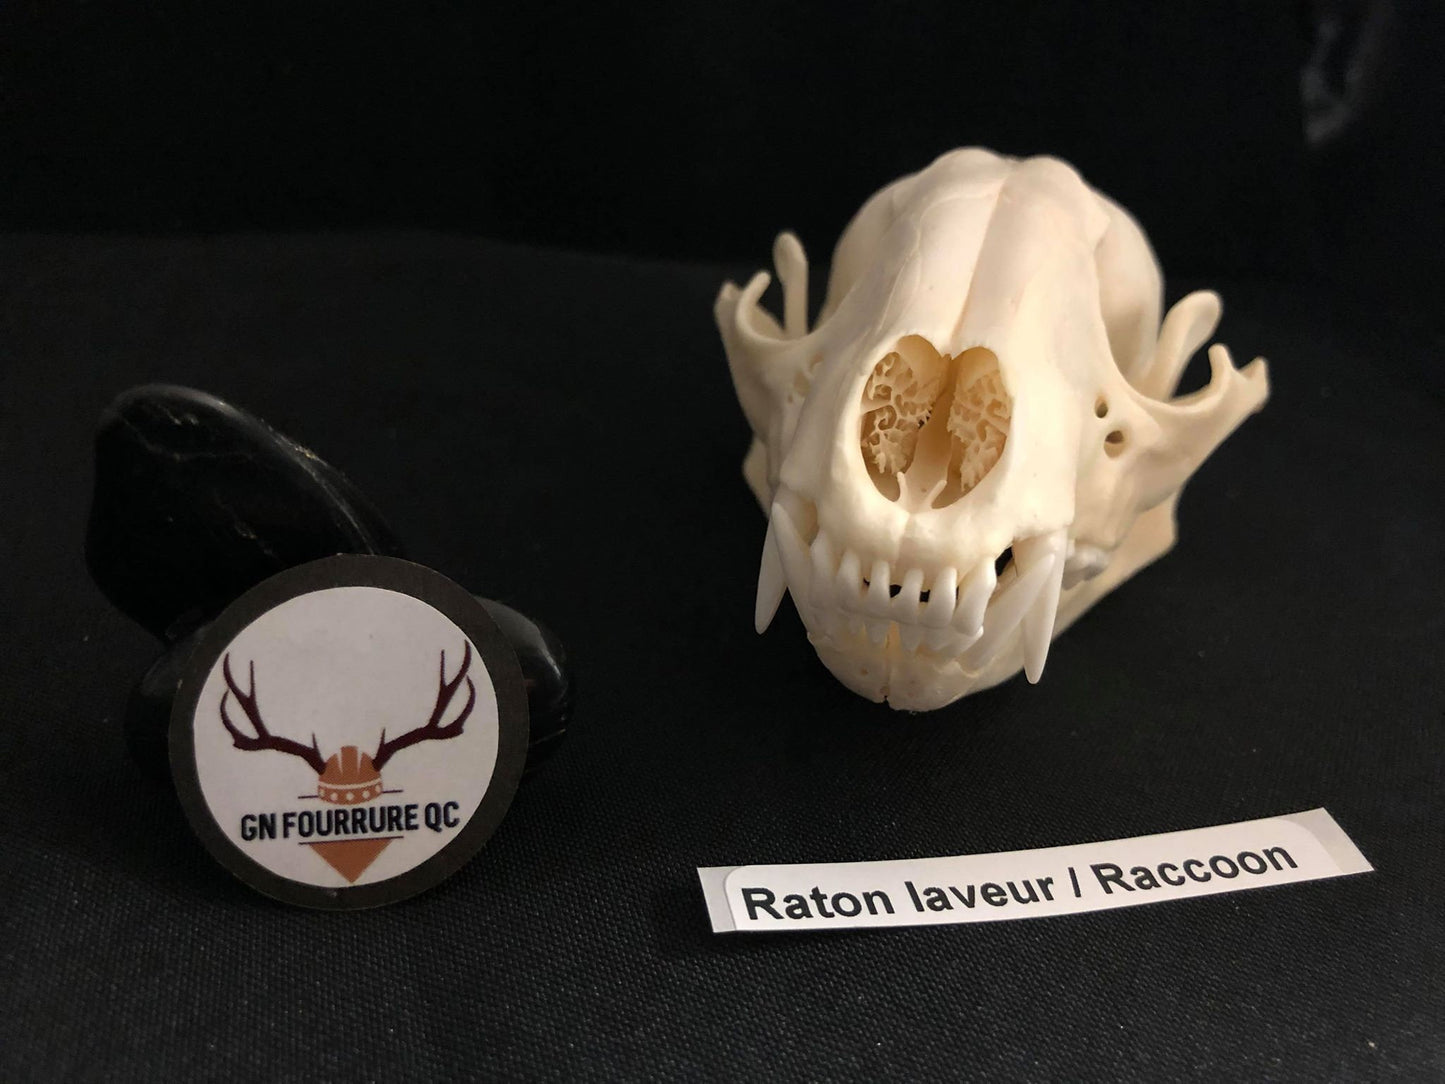 Raccoon Skull, Bone  /  Authentique Crâne de Râton Laveur